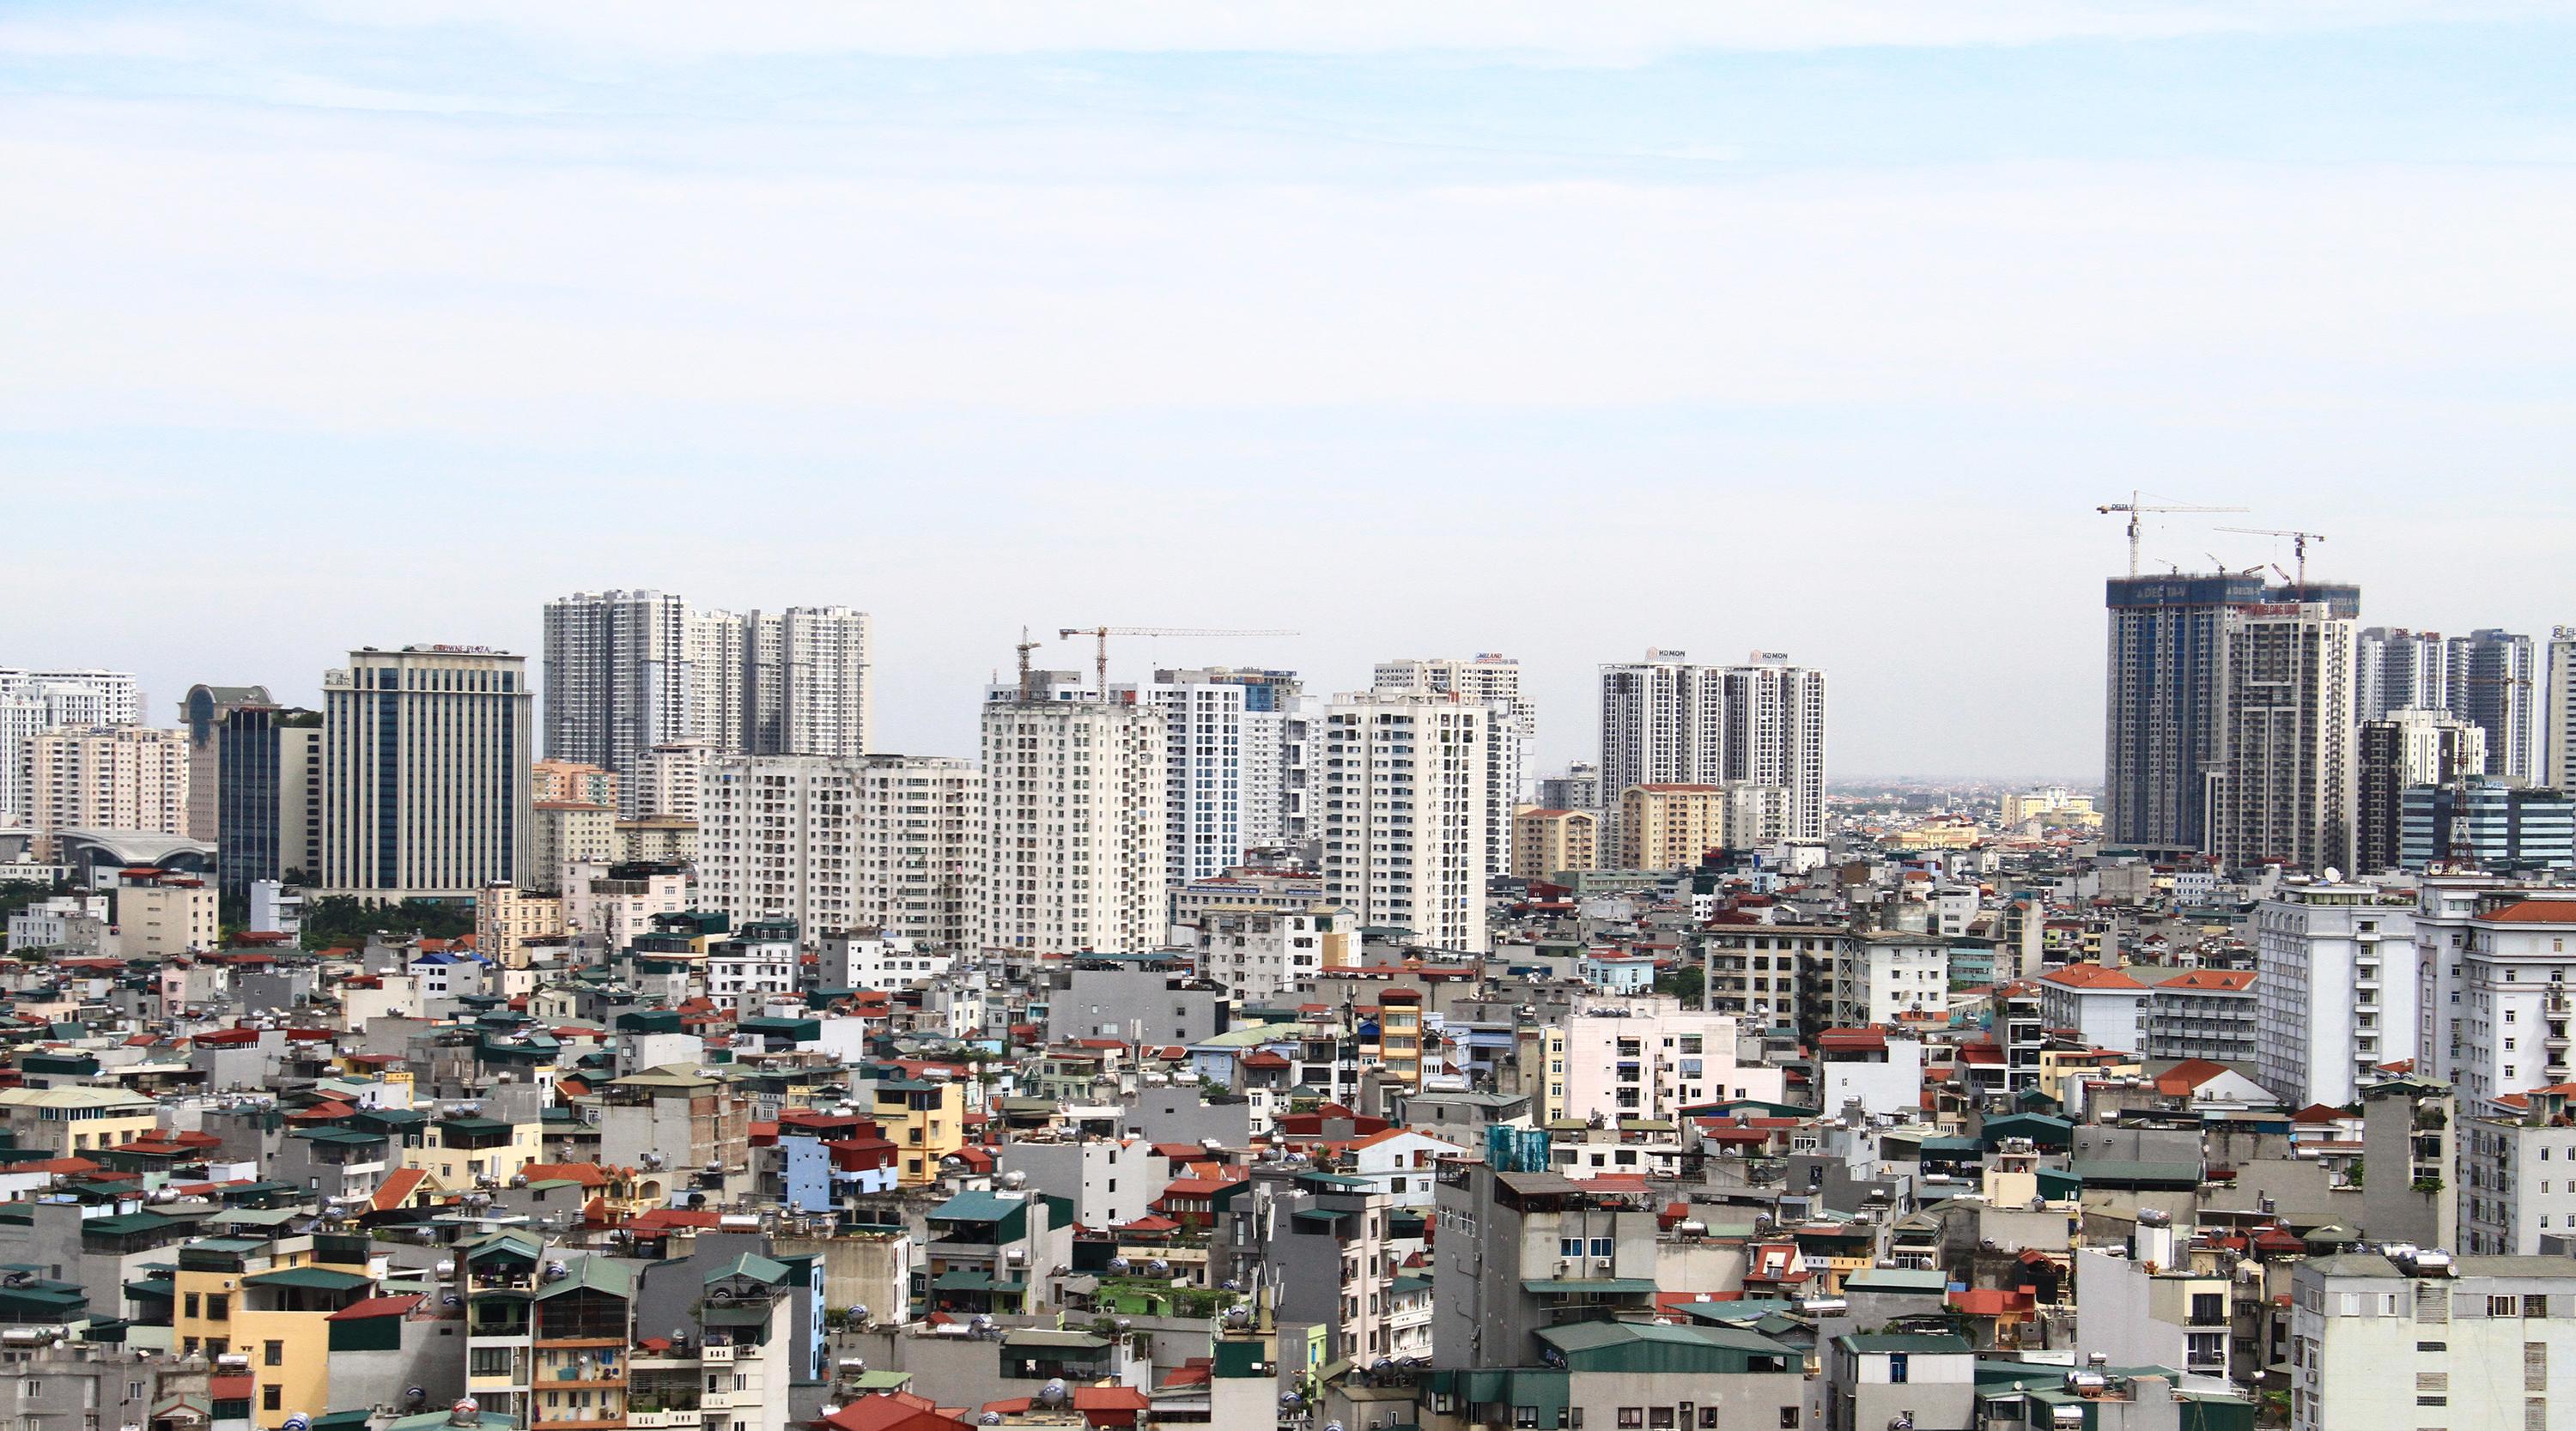 Bộ trưởng Nguyễn Thanh Nghị: Thị trường bất động sản có những dấu hiệu chưa ổn định